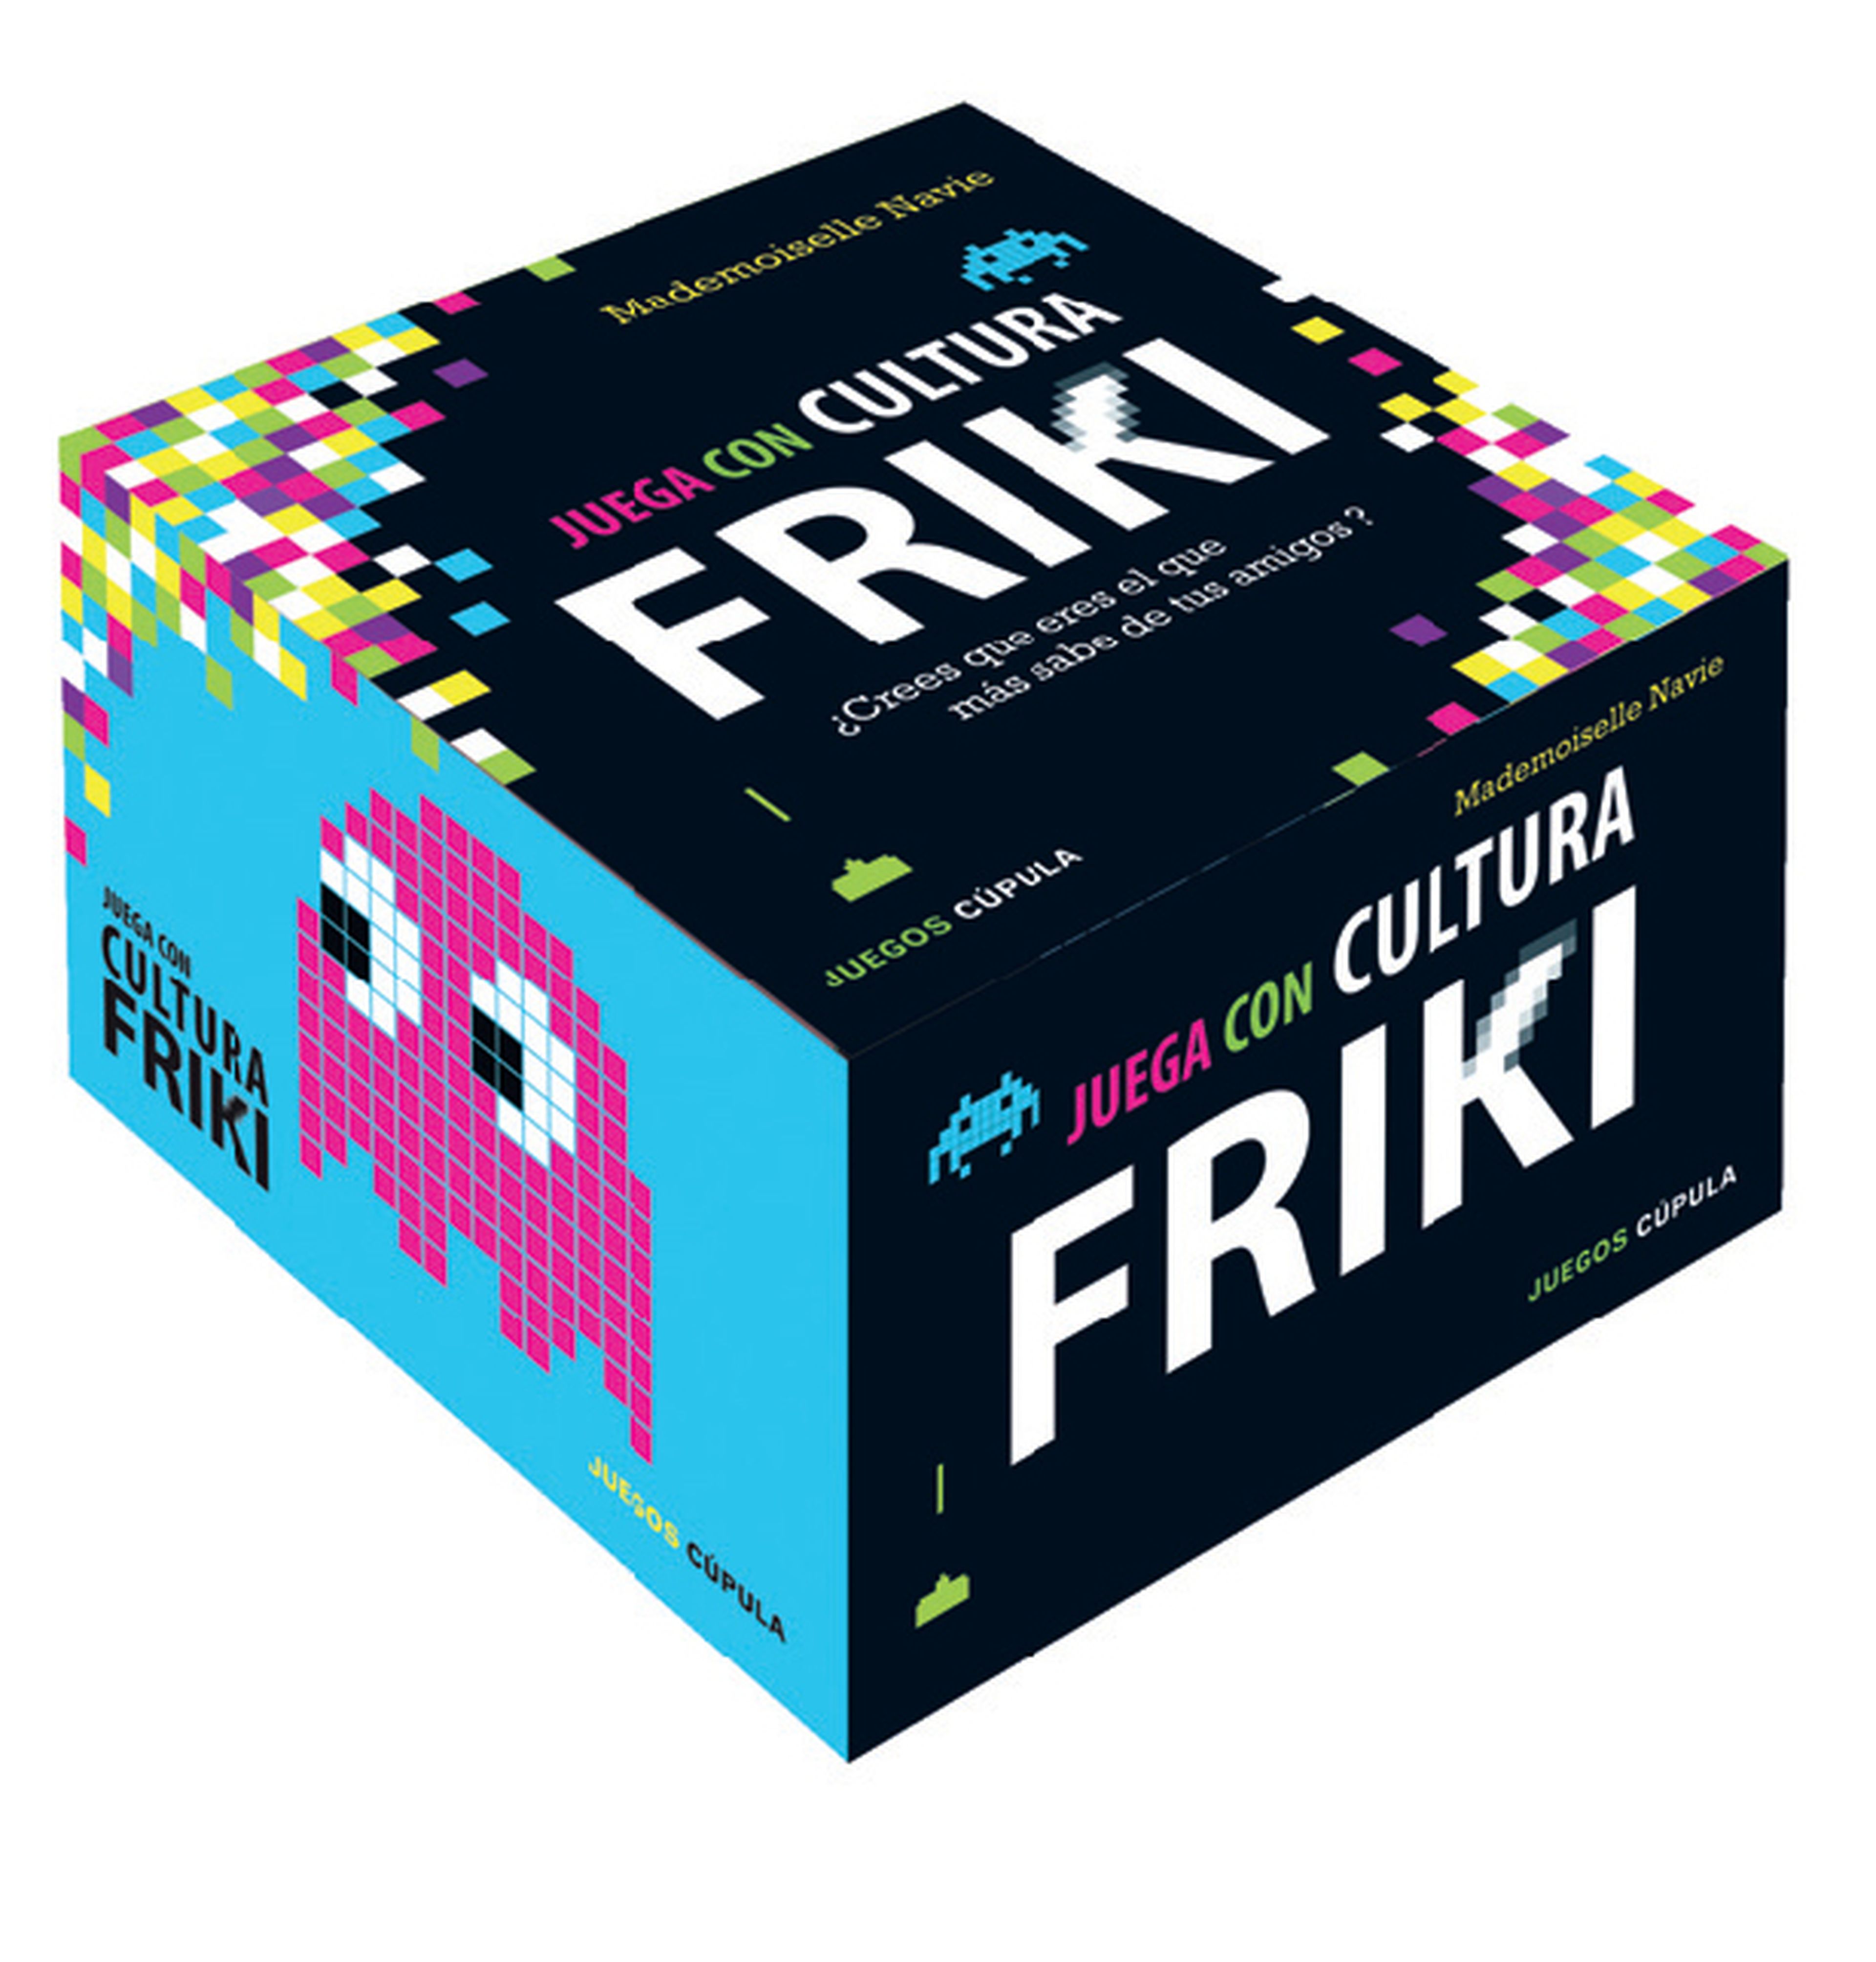 Juega con cultura friki: el libro juego geek definitivo.